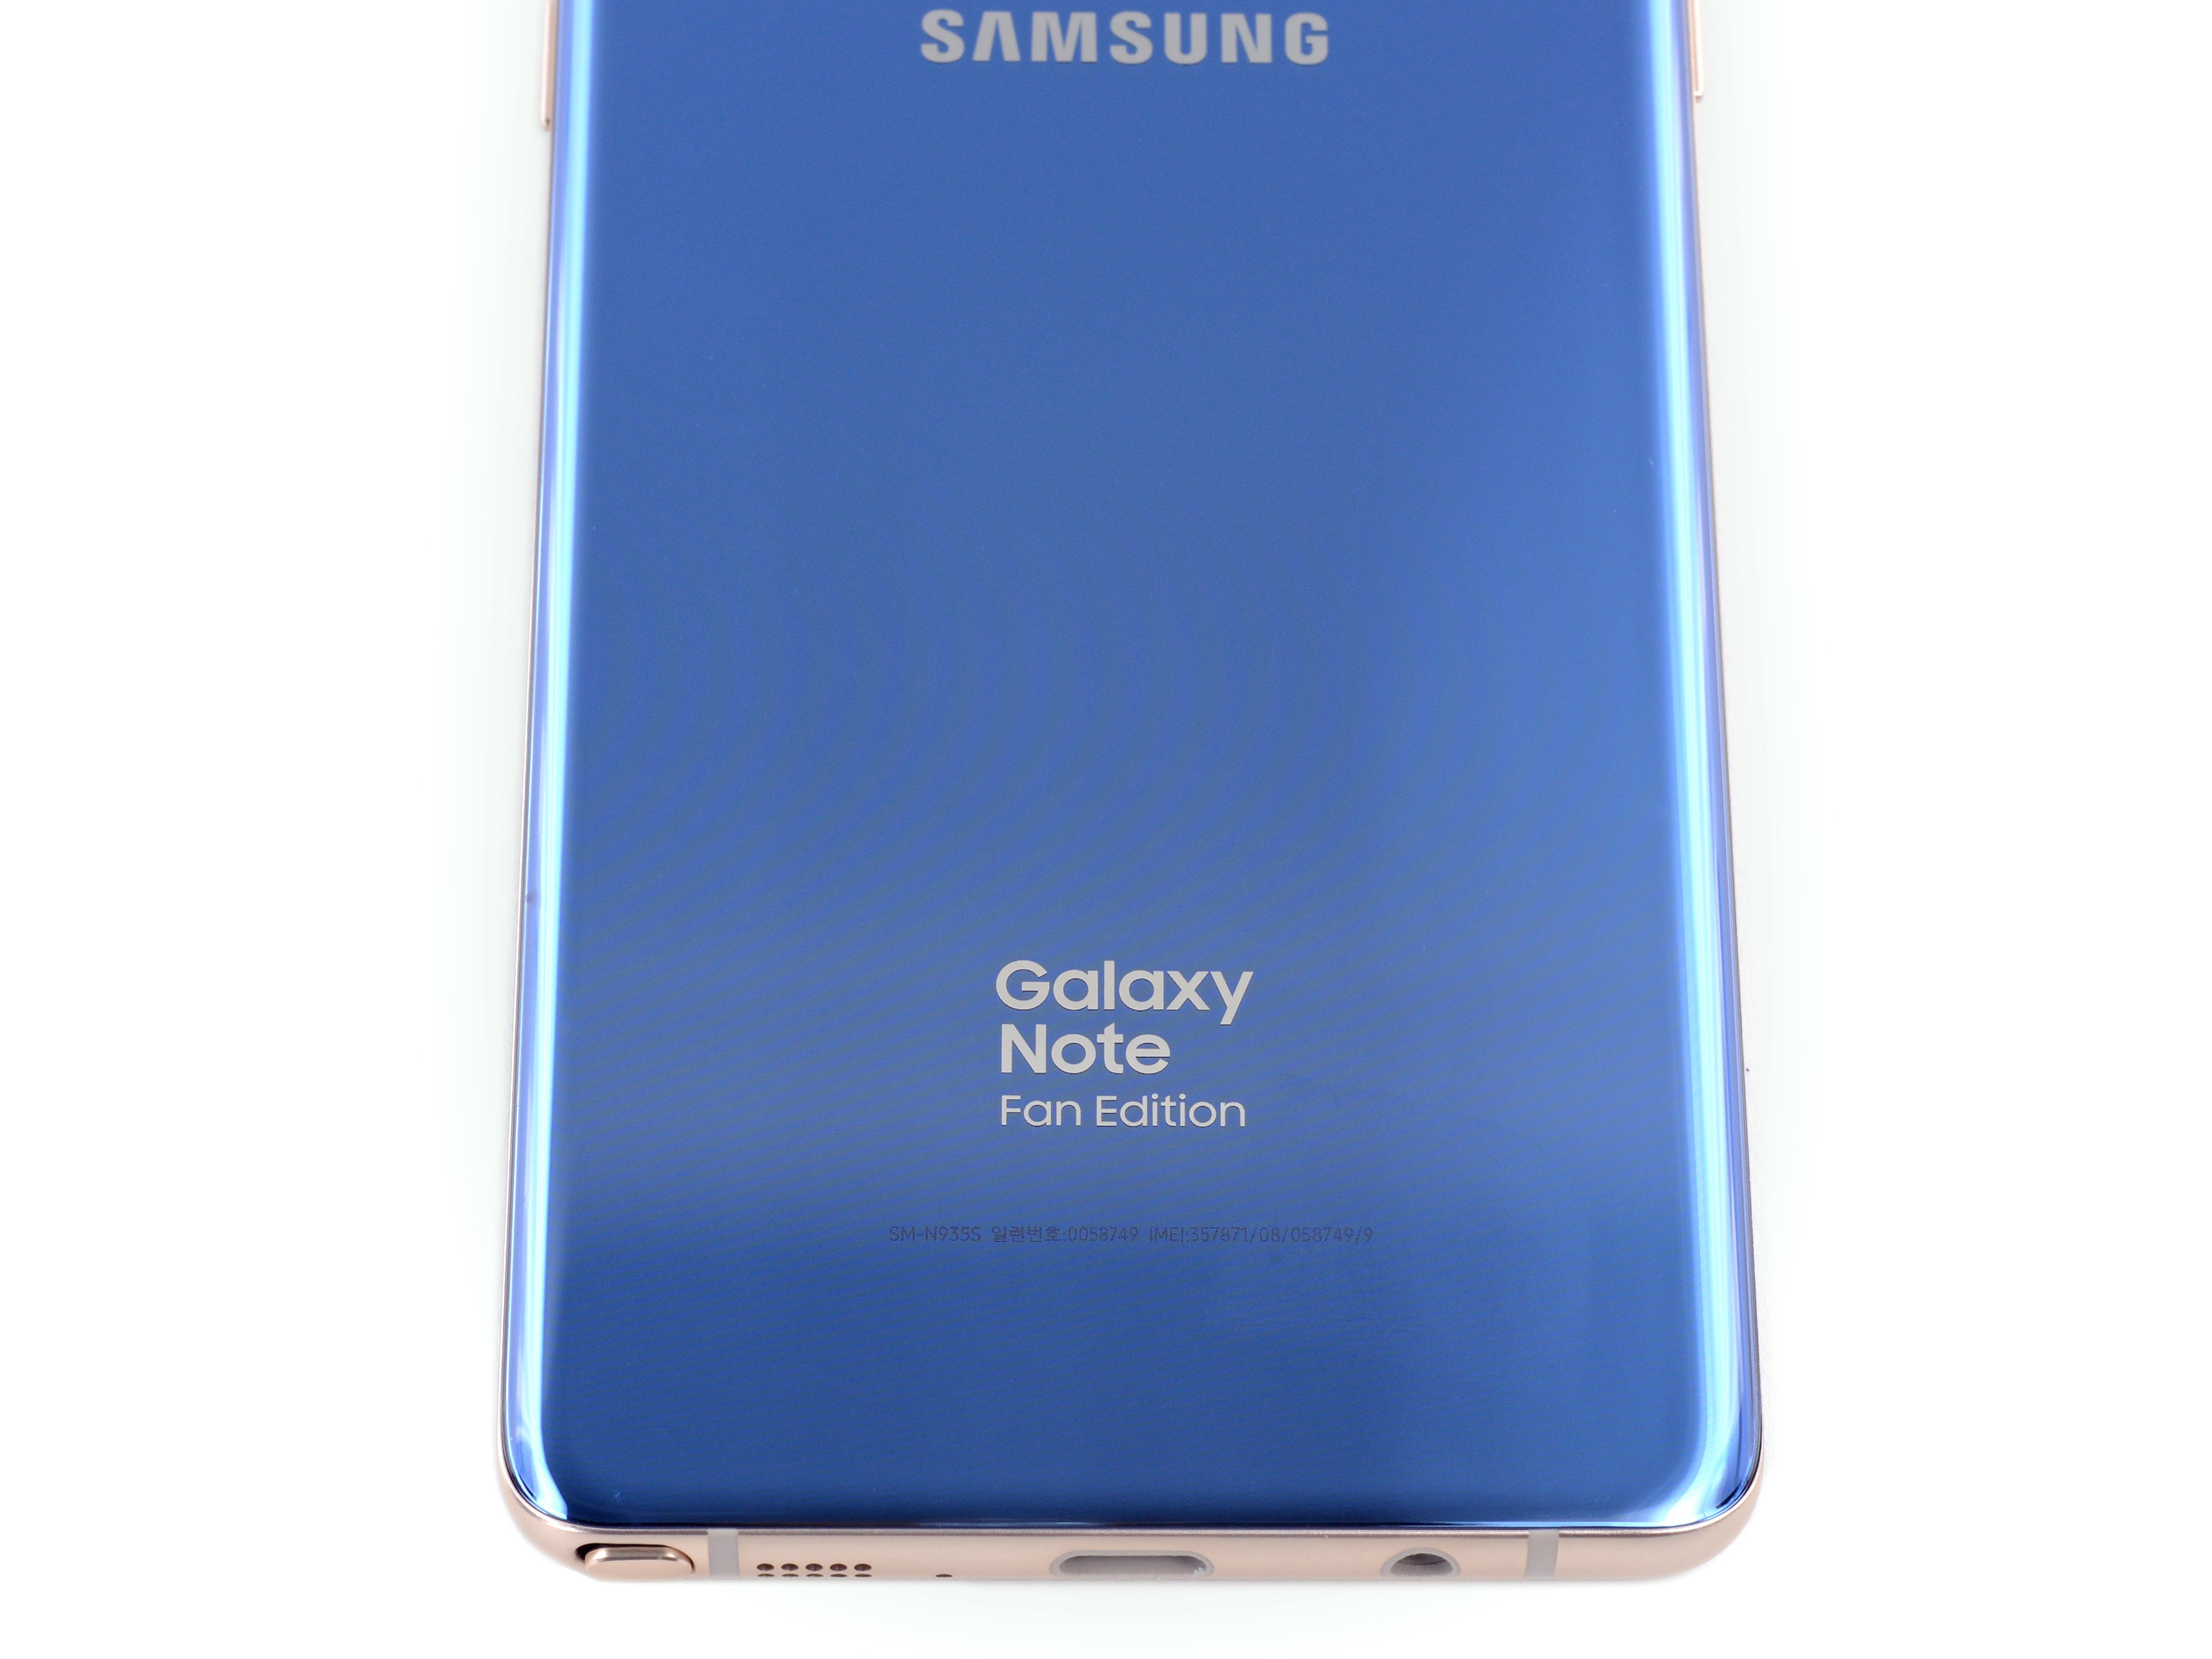 Galaxy note edition. Samsung Galaxy Fan Edition. Galaxy Note 7 Fan Edition. Samsung Galaxy Note 11 Pro. Samsung Galaxy Note fun Edition.